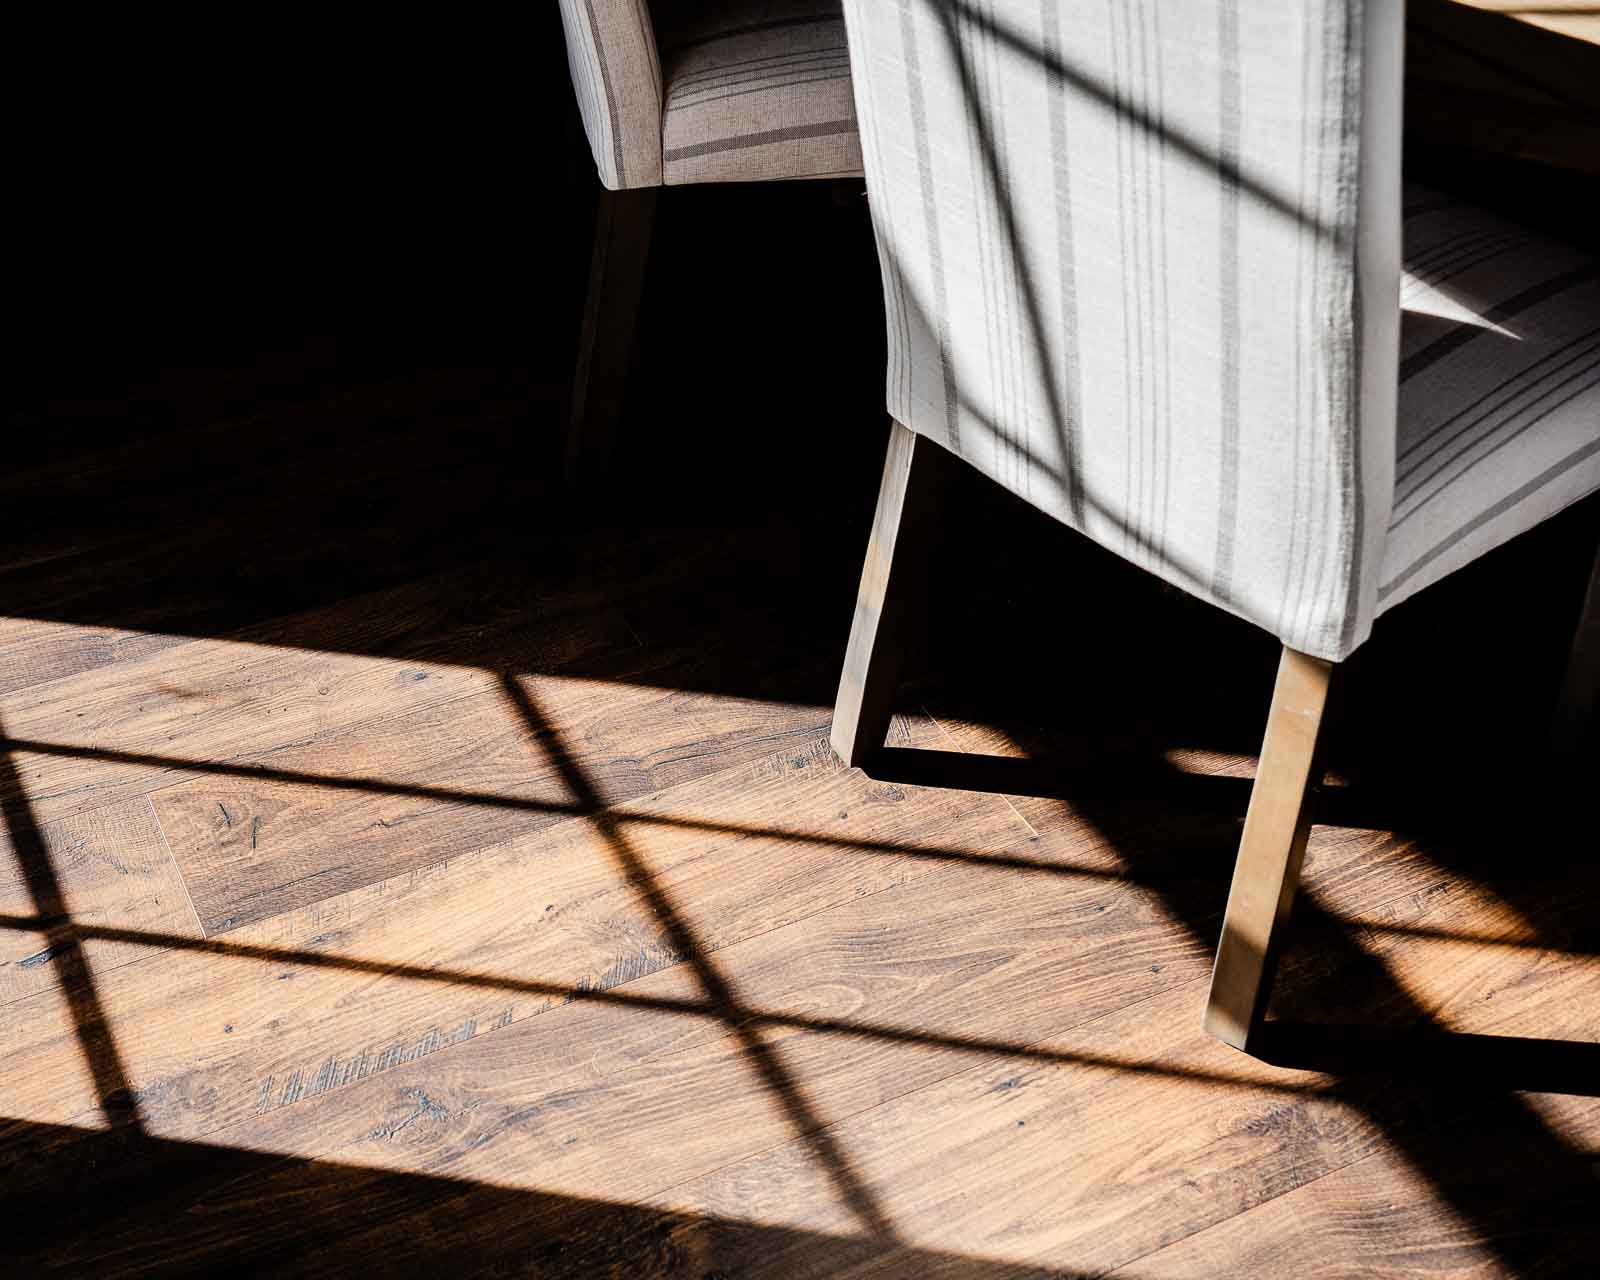 Laminate floor in sunlight